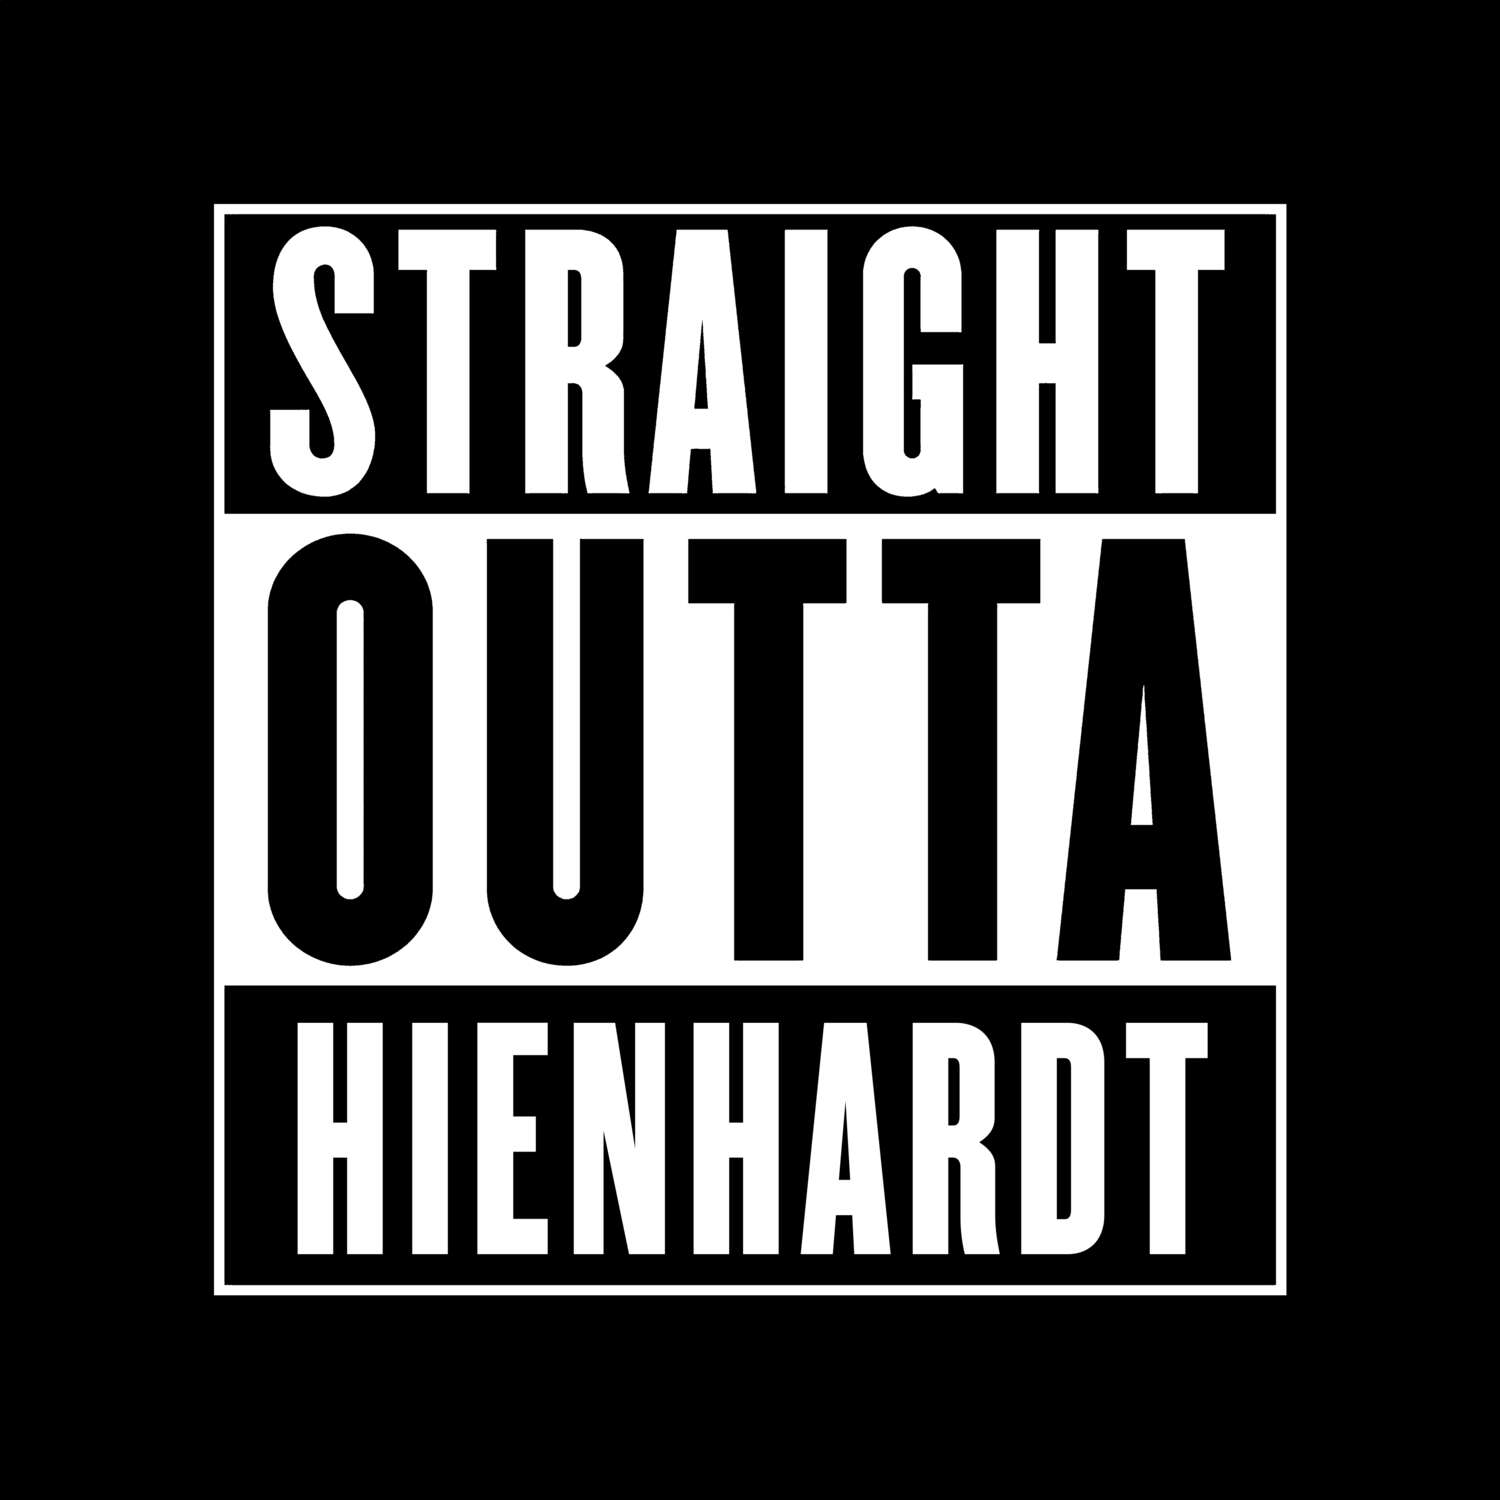 Hienhardt T-Shirt »Straight Outta«